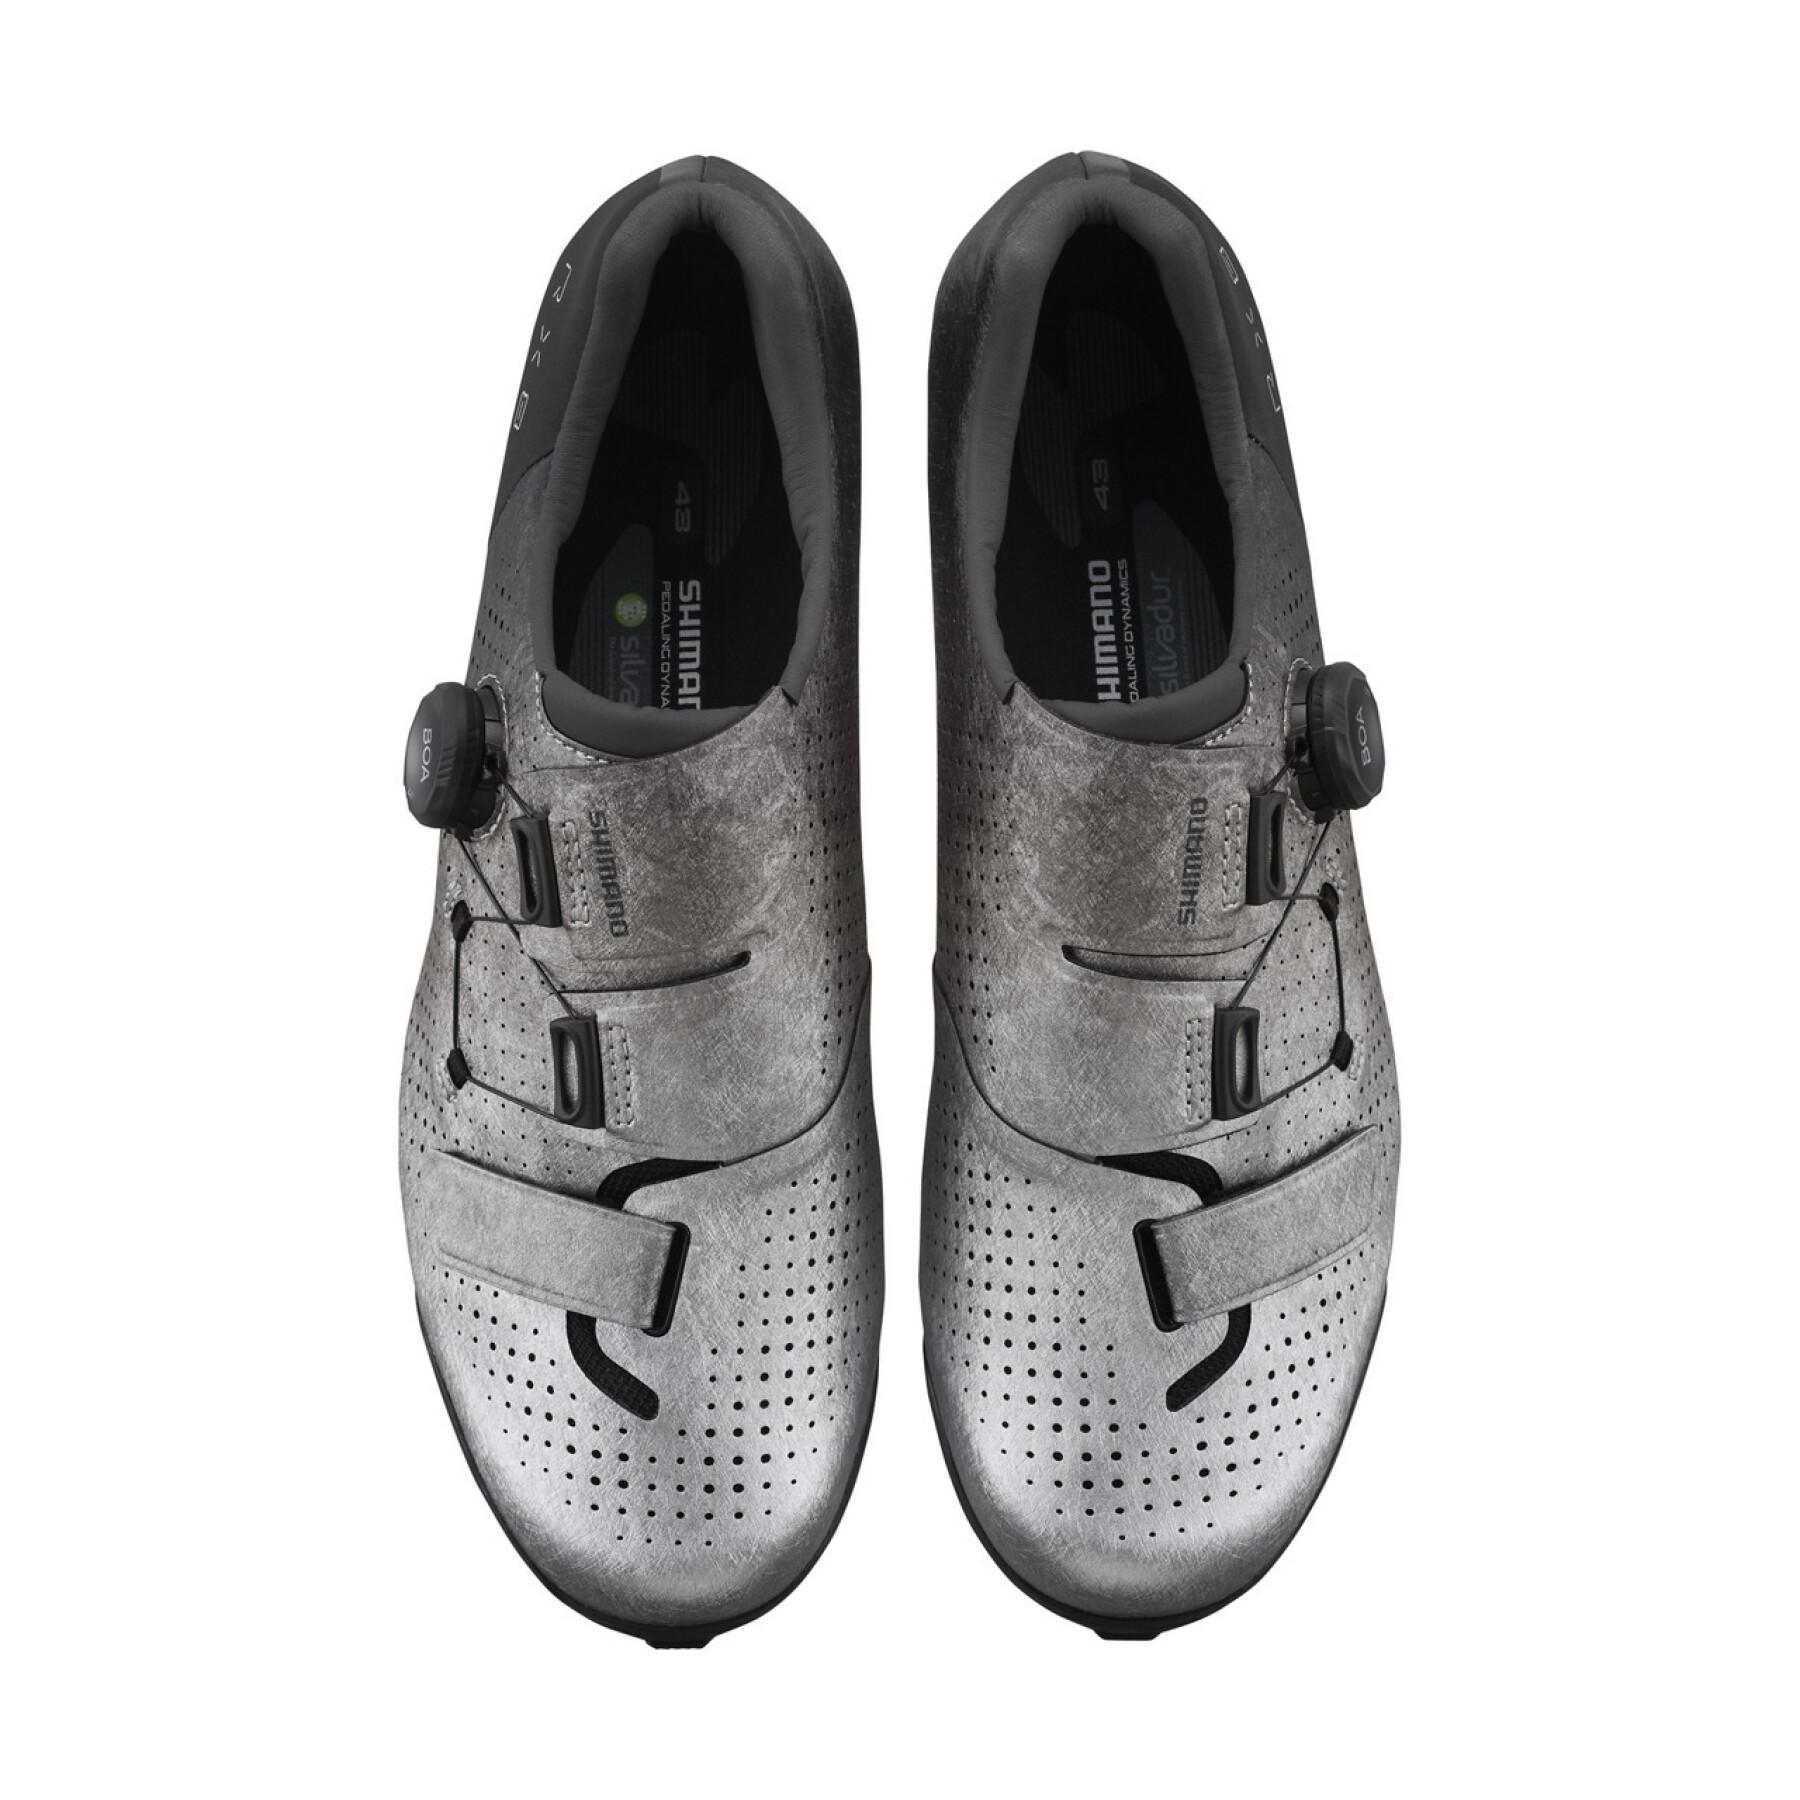 Sapatos Shimano sh-rx801